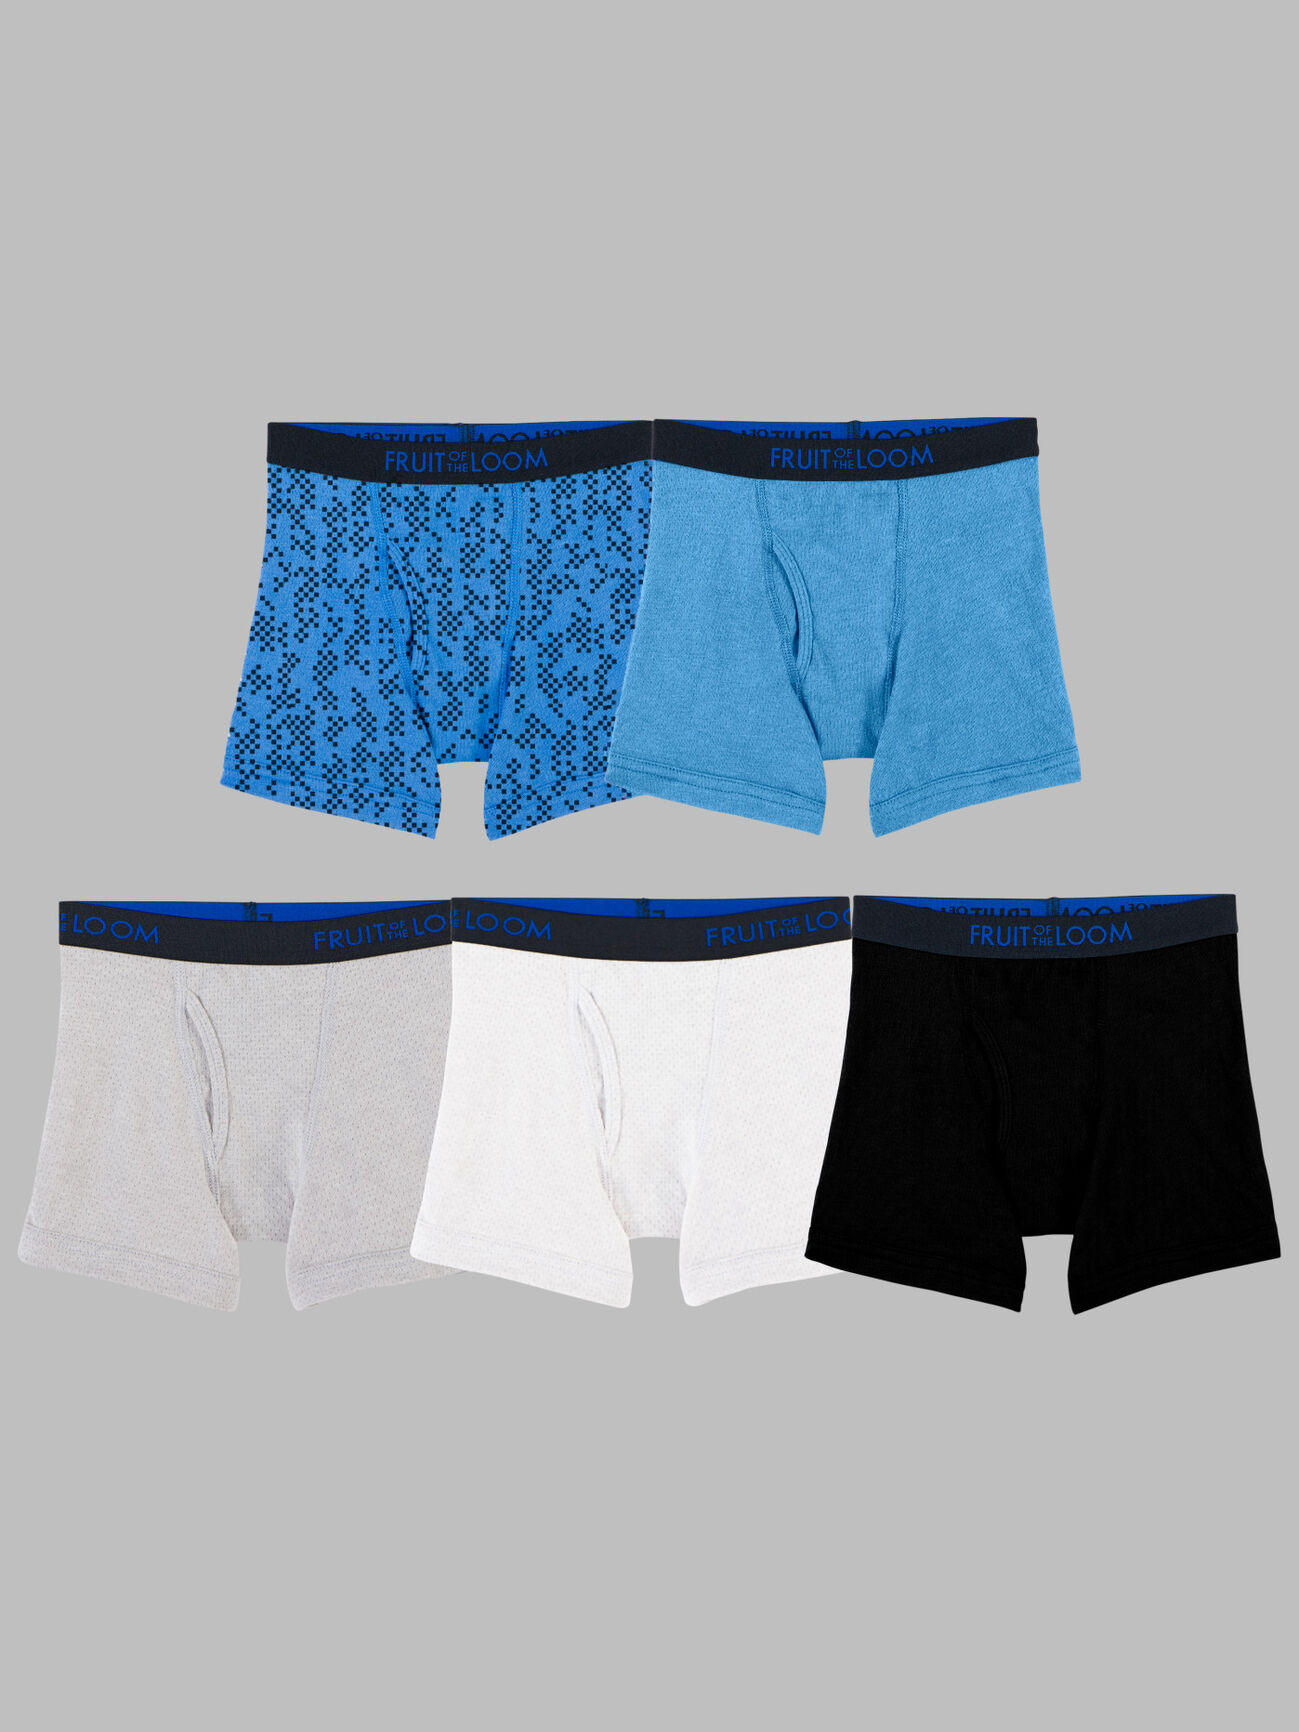 Cotton Boxer Shorts, Cotton Underpants, Boxer Shorts Boy